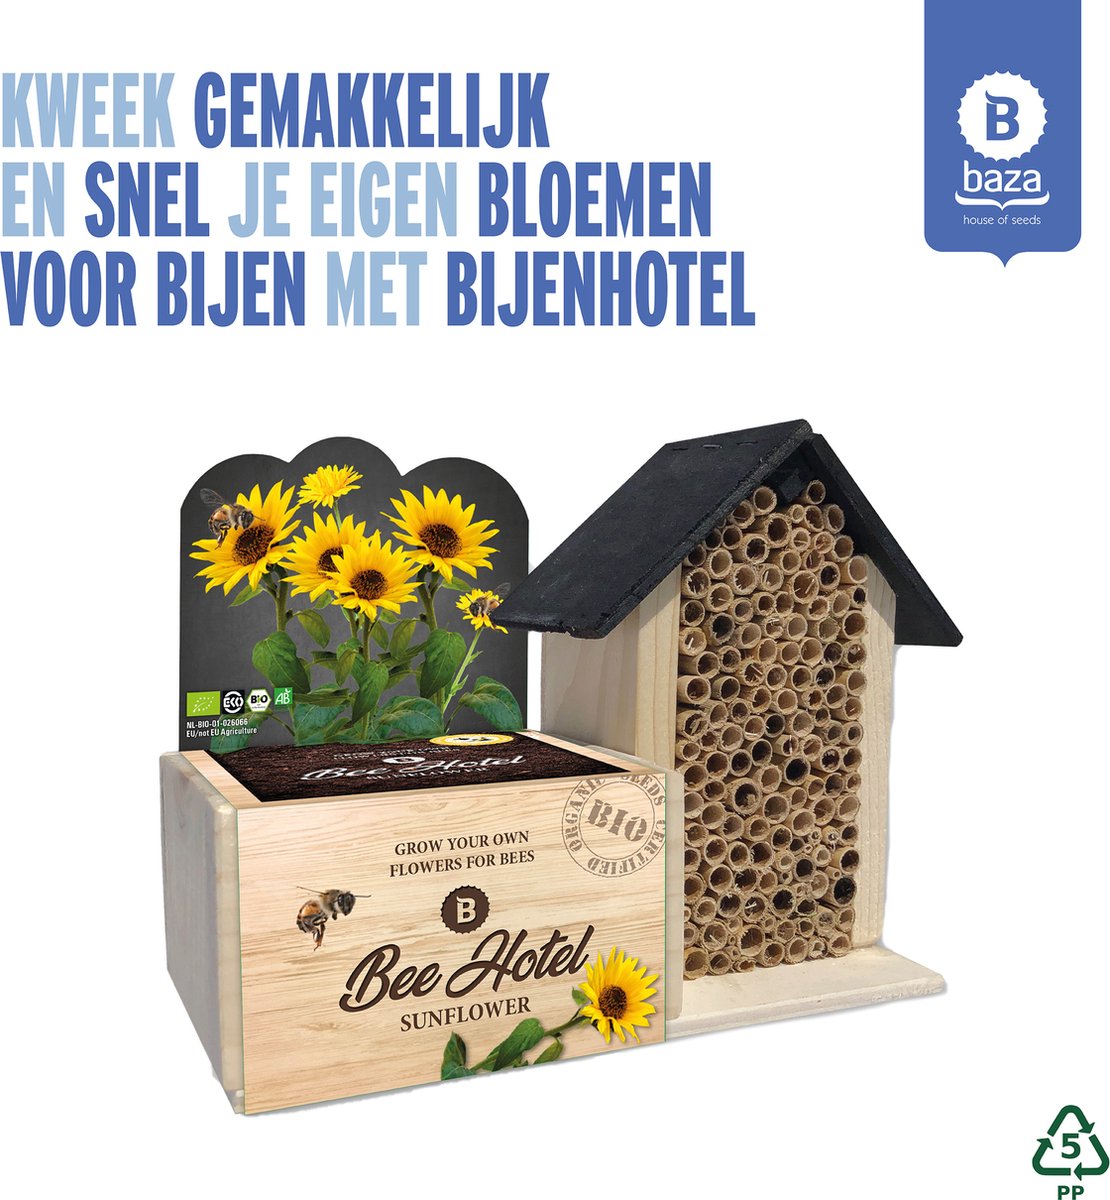 Baza Bee Hotel Met Bio Bloemen Zonnebloem/ FSC/BIO/cadeau idee